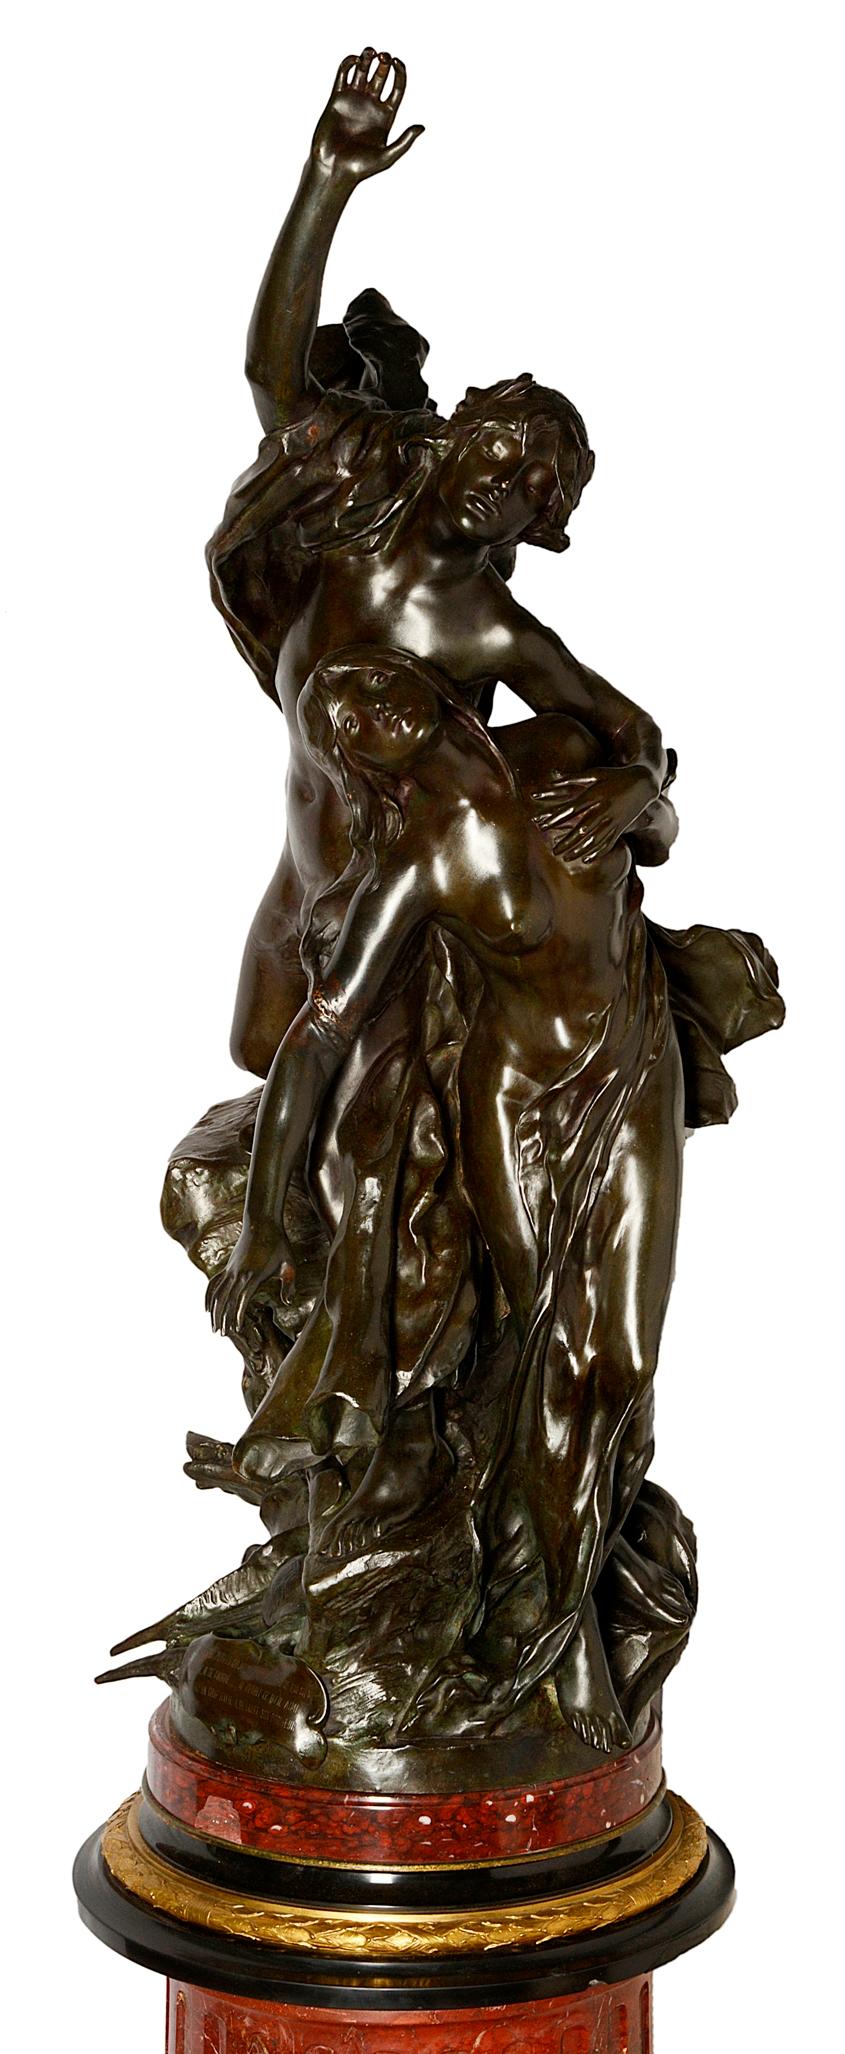 Eine sehr beeindruckende klassische Bronzestatue aus dem 19. Jahrhundert mit gottähnlichen halbnackten Figuren, die sich in den Himmel strecken, mit einem Hund zu ihren Füßen.
Montiert auf einem eindrucksvollen Sockel aus rotem Marmor mit